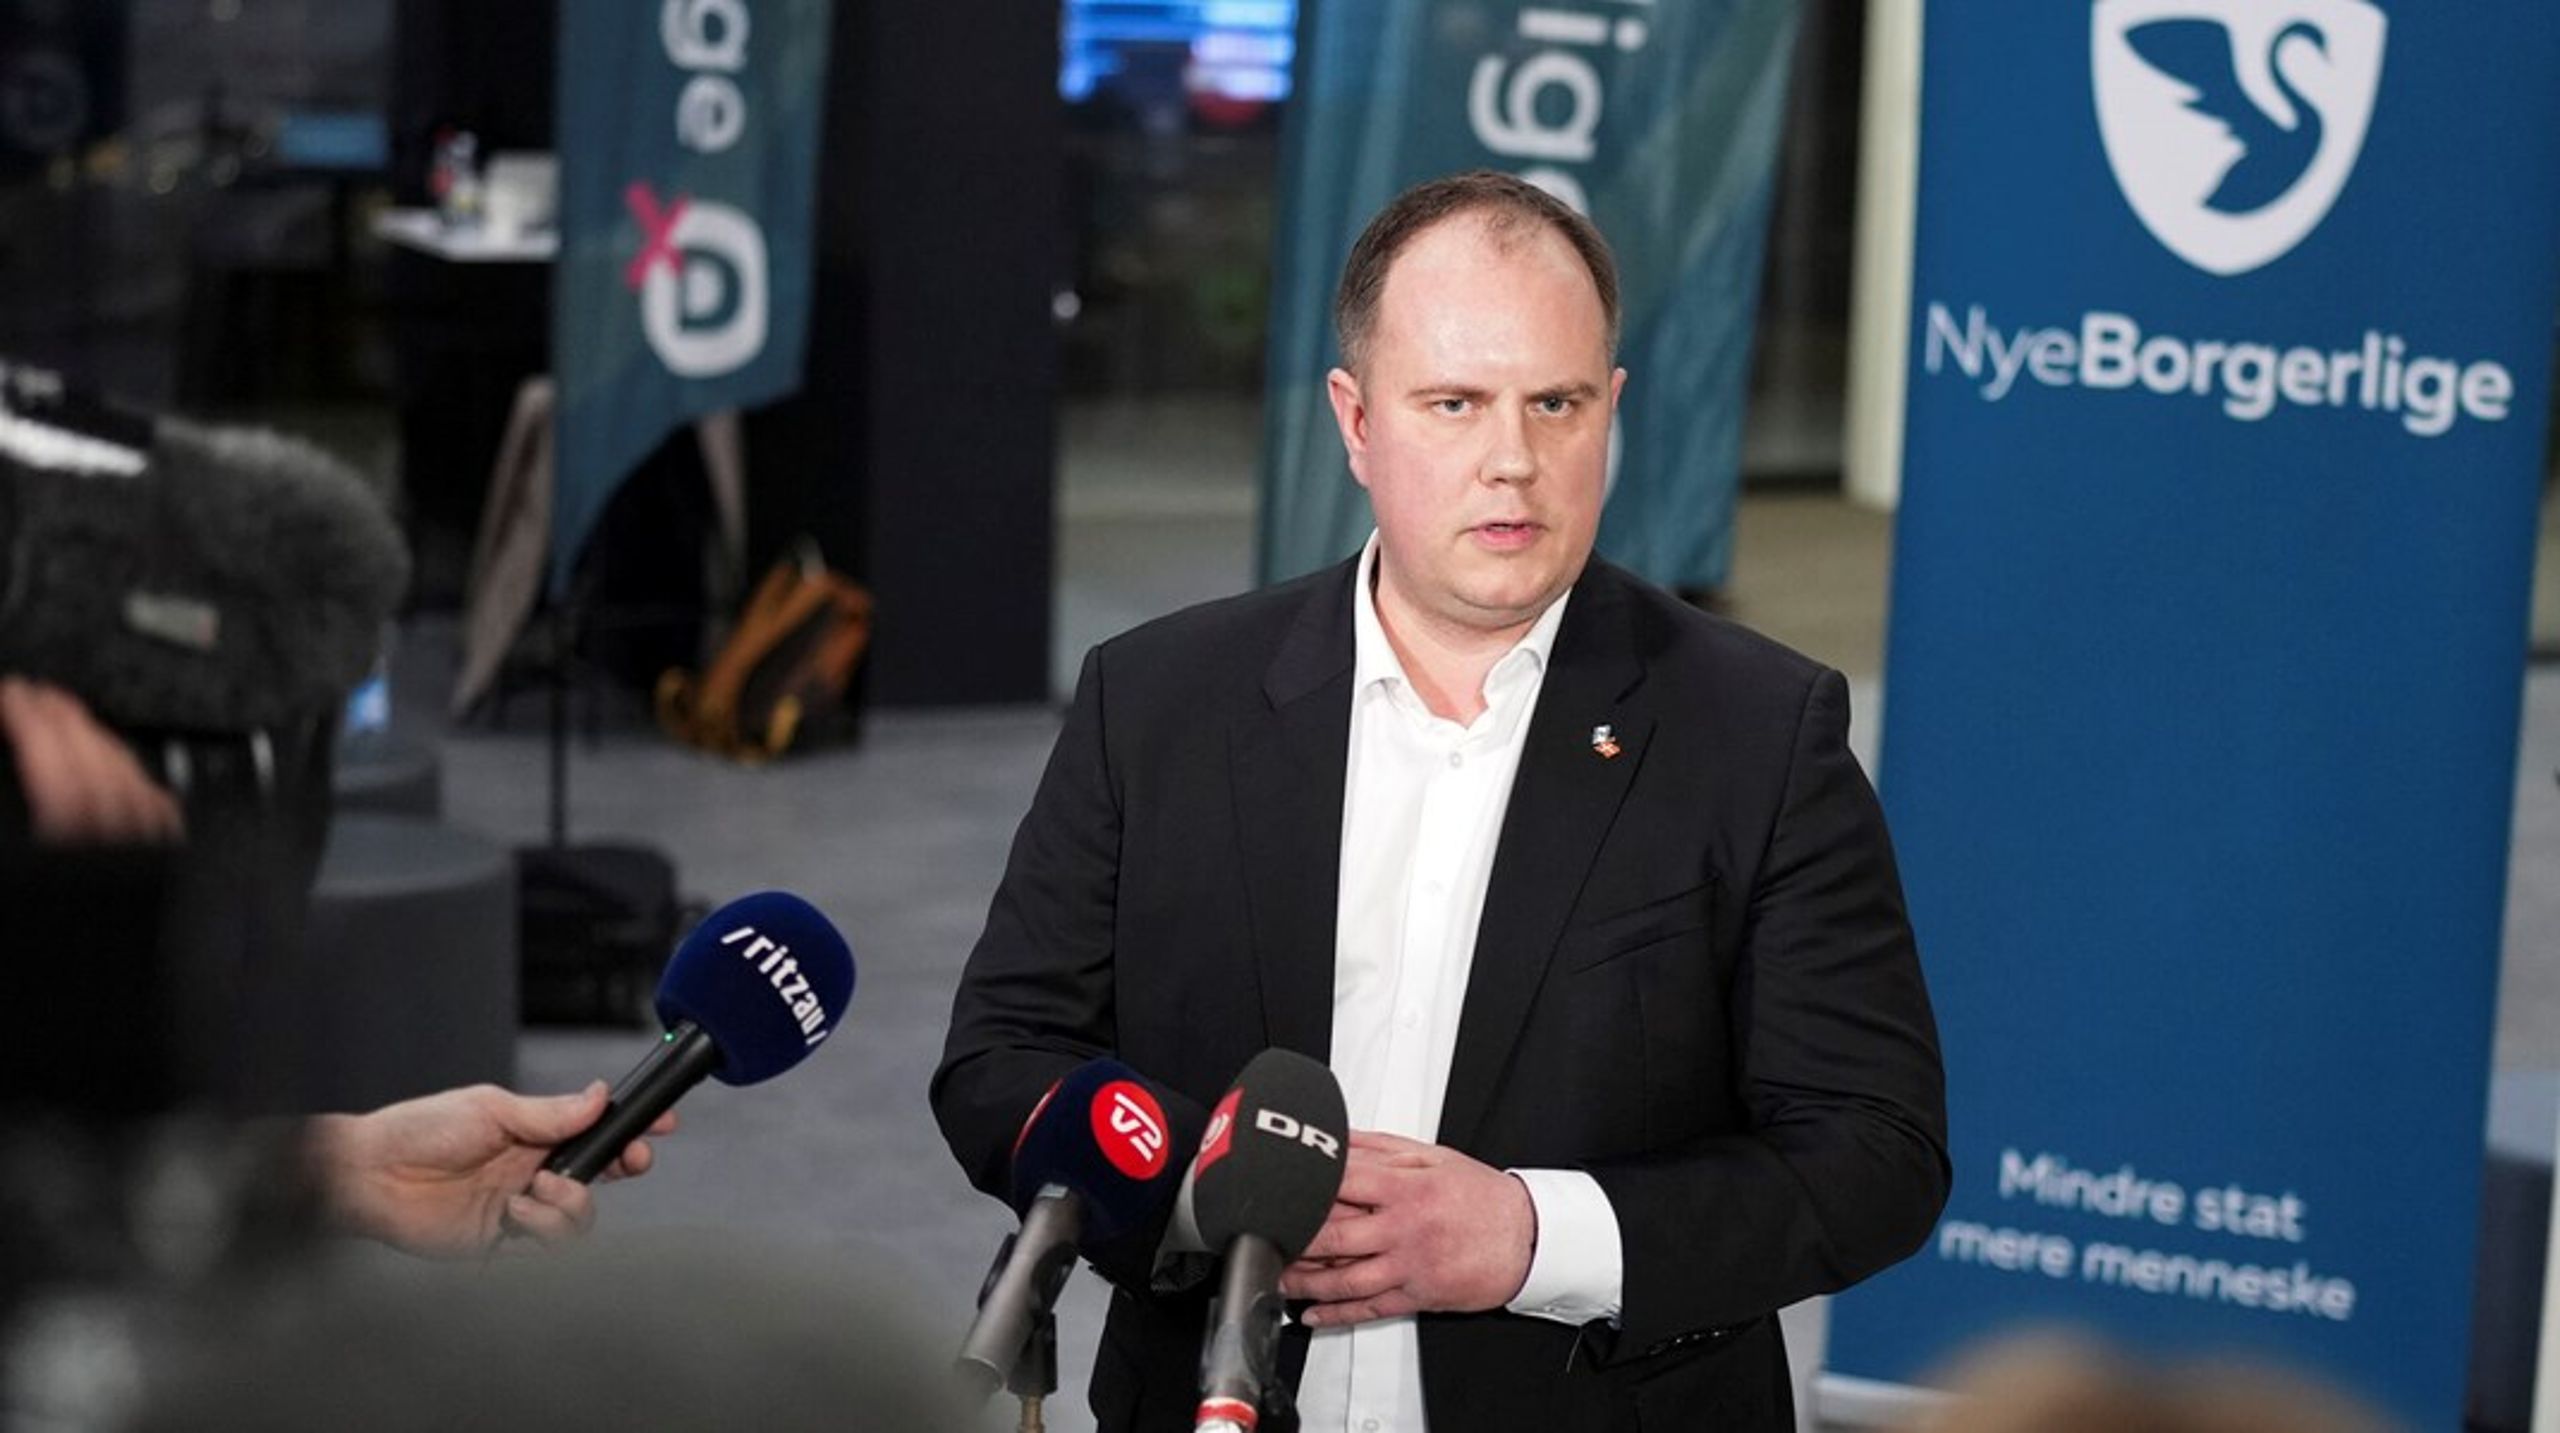 Martin Henriksen blev valgt som formand&nbsp; på en ekstraordinær generalforsamling i april efter måneder med uvished om partiets fremtid.&nbsp;